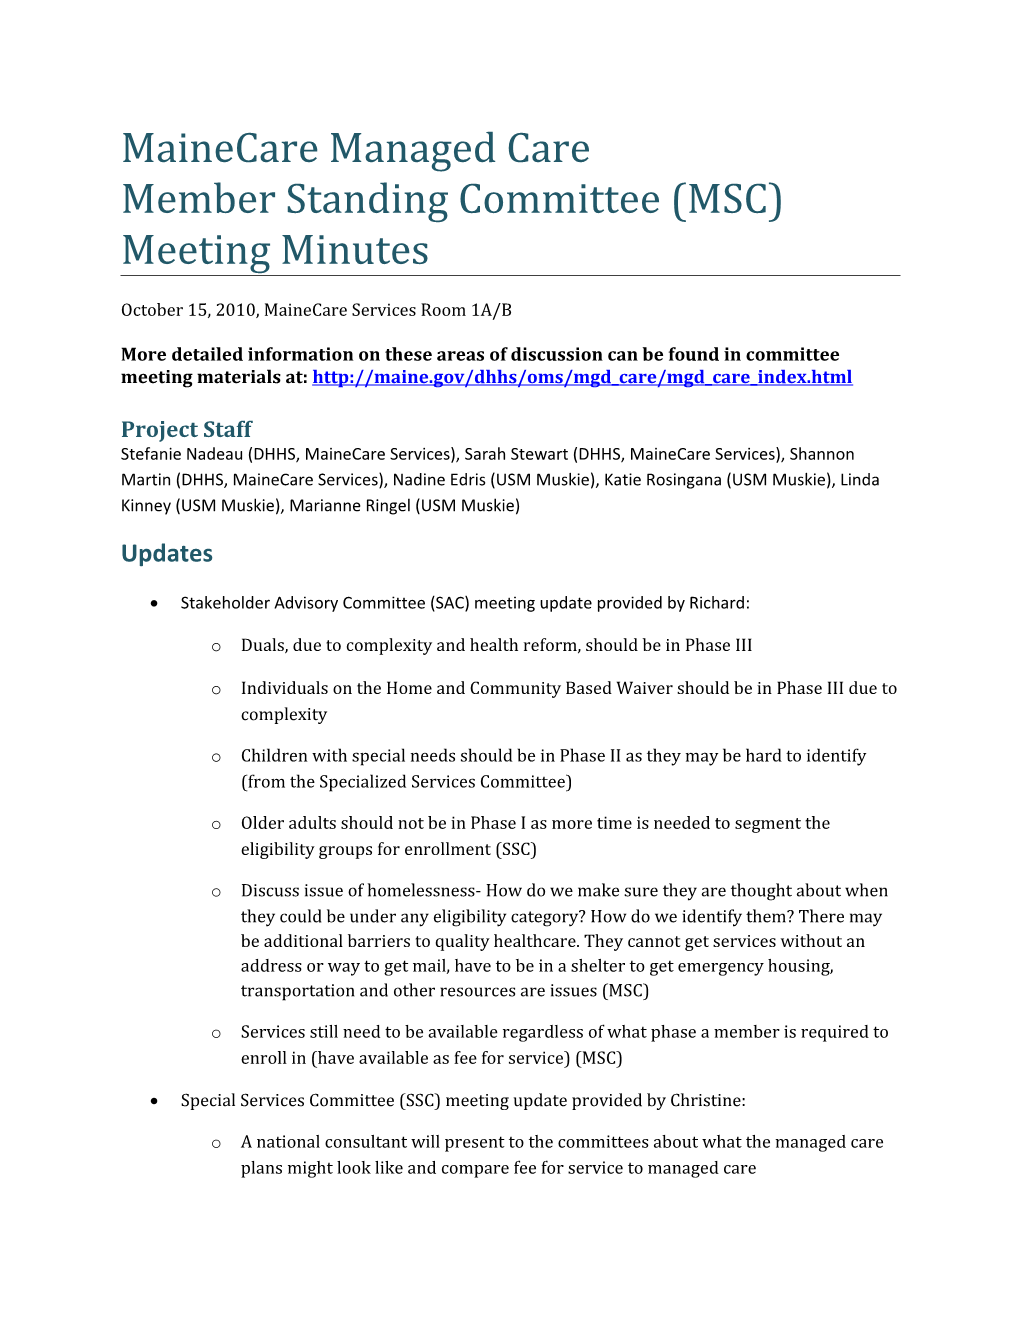 Member Standing Committee (MSC)